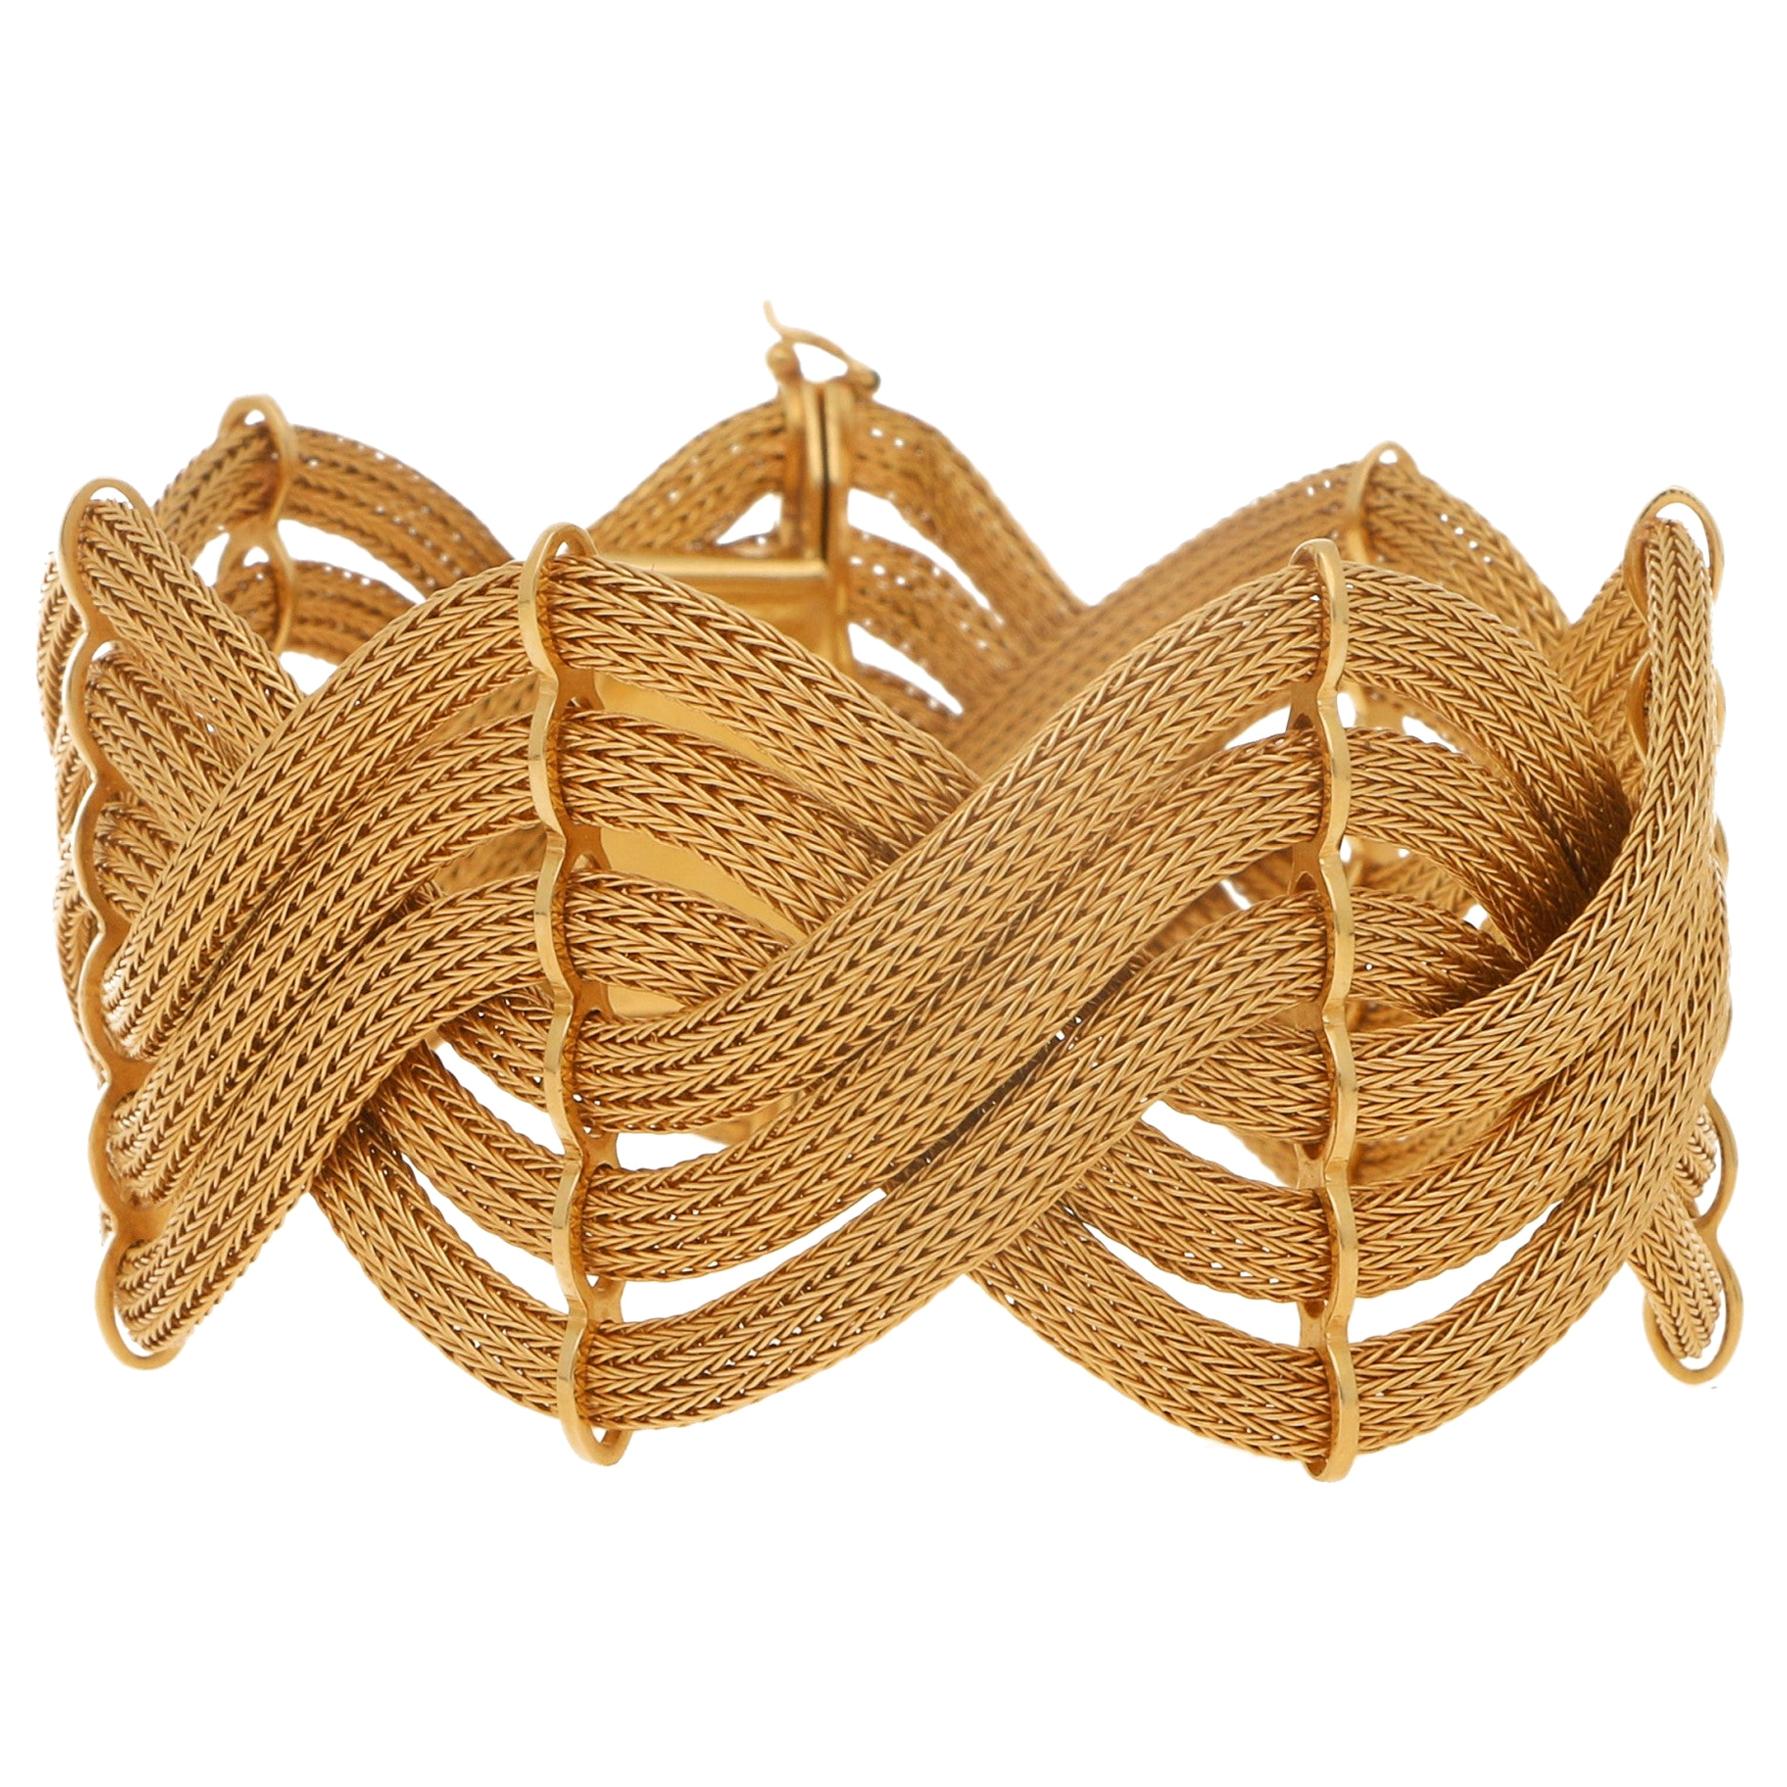 1960s Italian Rose Gold Braided Bracelet